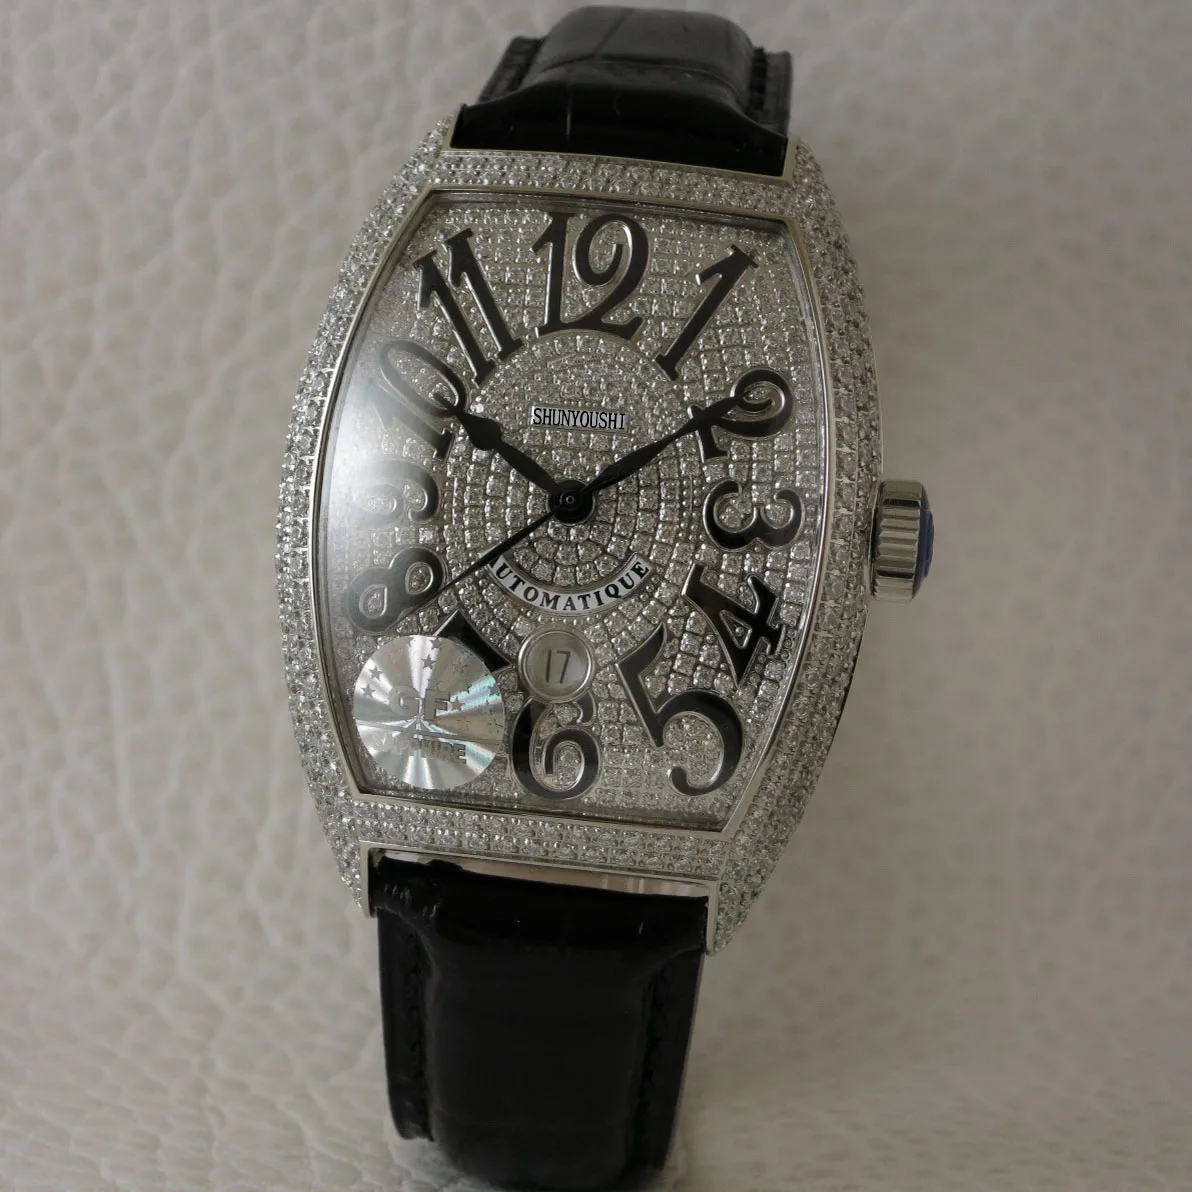 WG06101 мужские часы Топ бренд подиум роскошный европейский дизайн автоматические механические часы